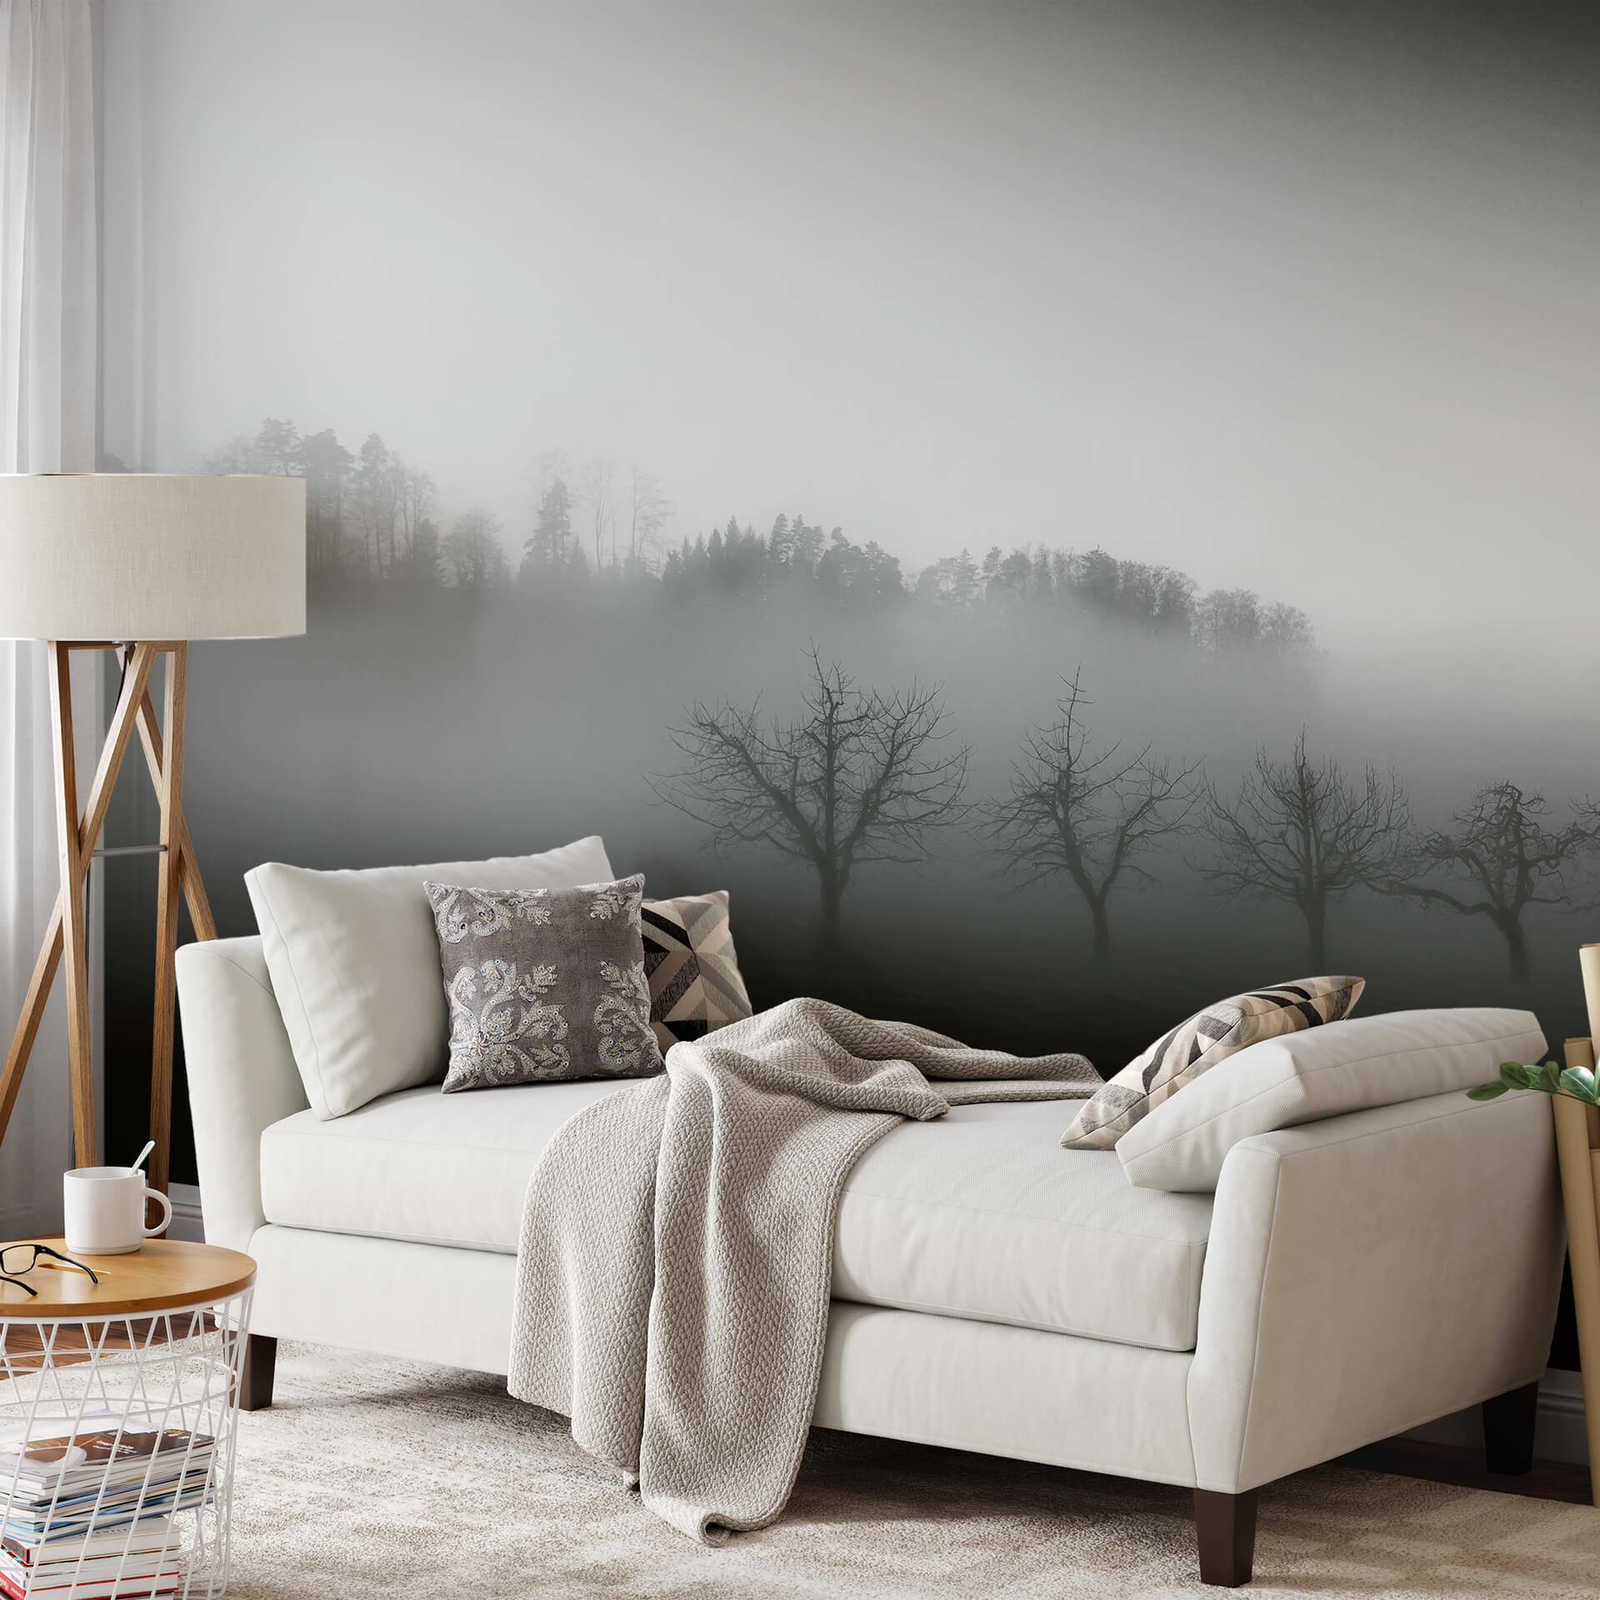             Fototapete Landschaft mit Nebel – Schwarz, Weiß, Grau
        